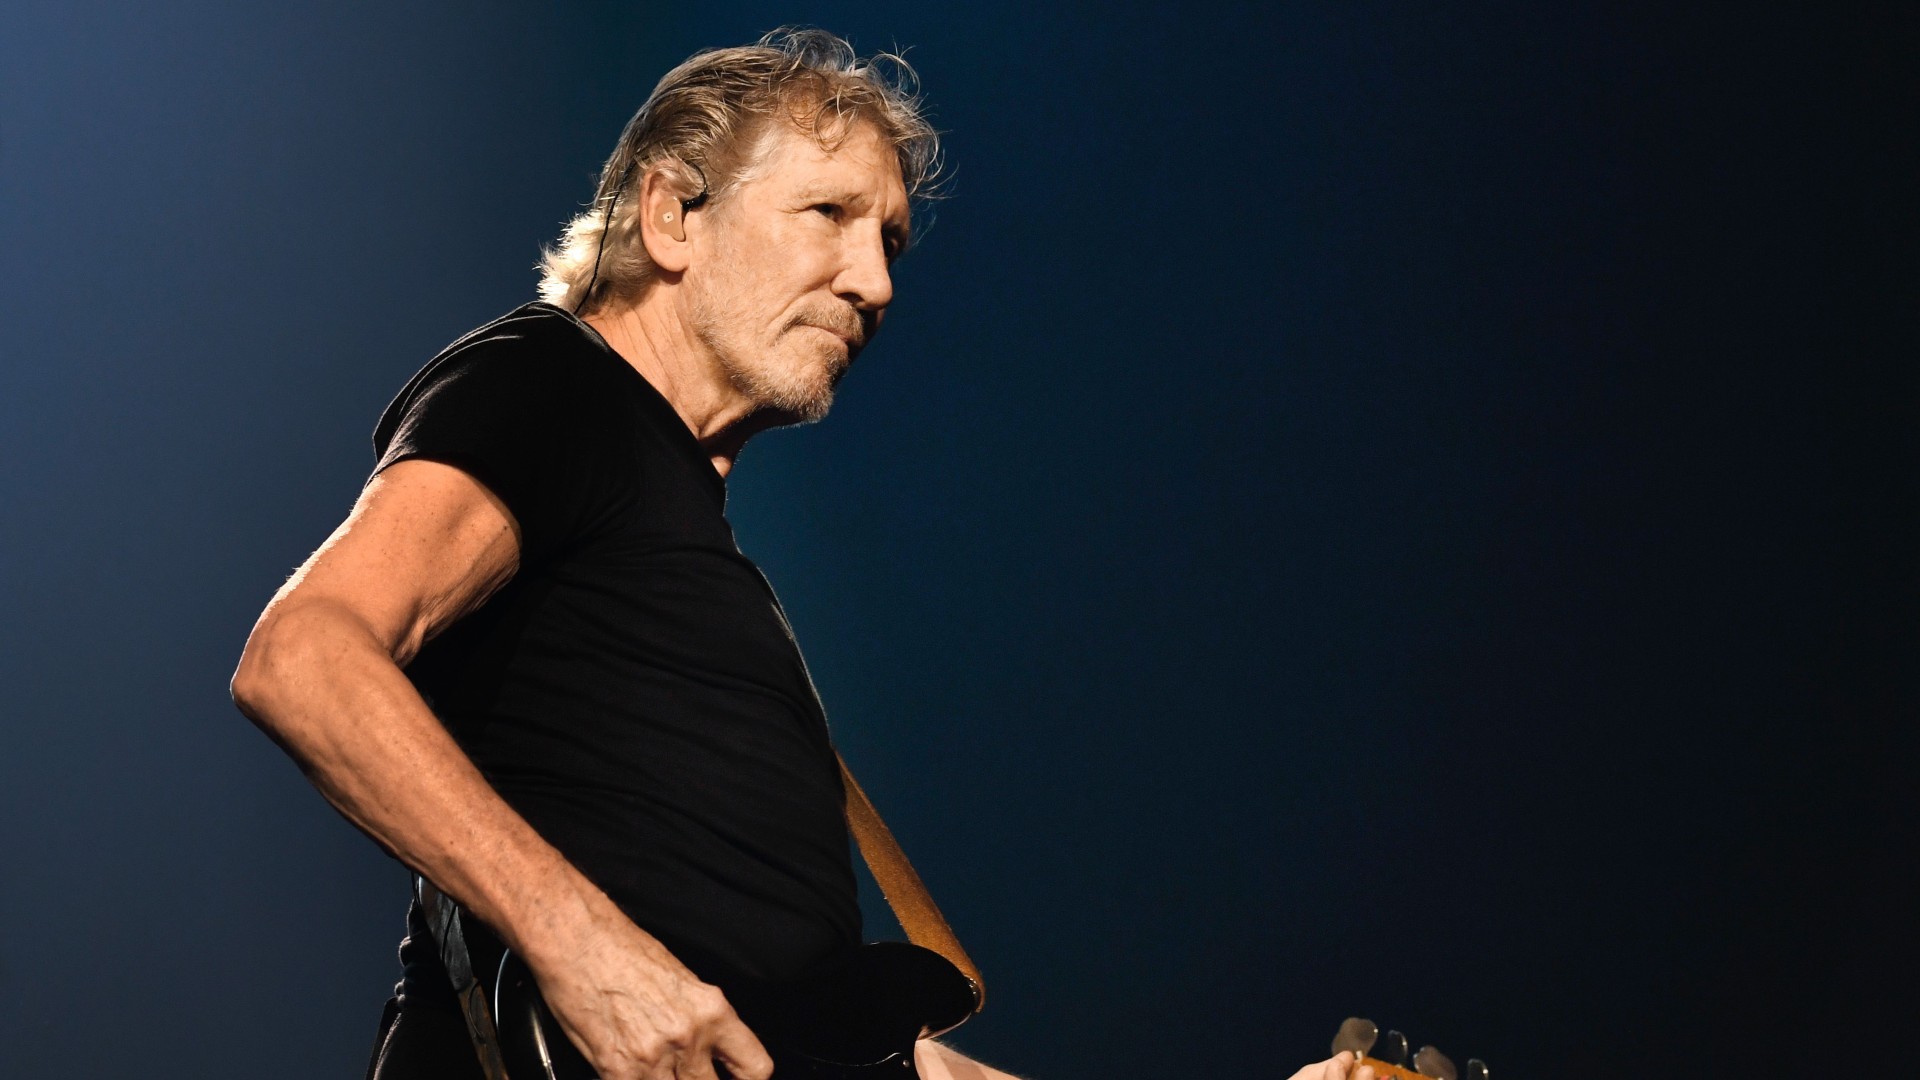 Comunidad Judía de Chile pide impedir que el músico Roger Waters incite “al odio y al antisemitismo”